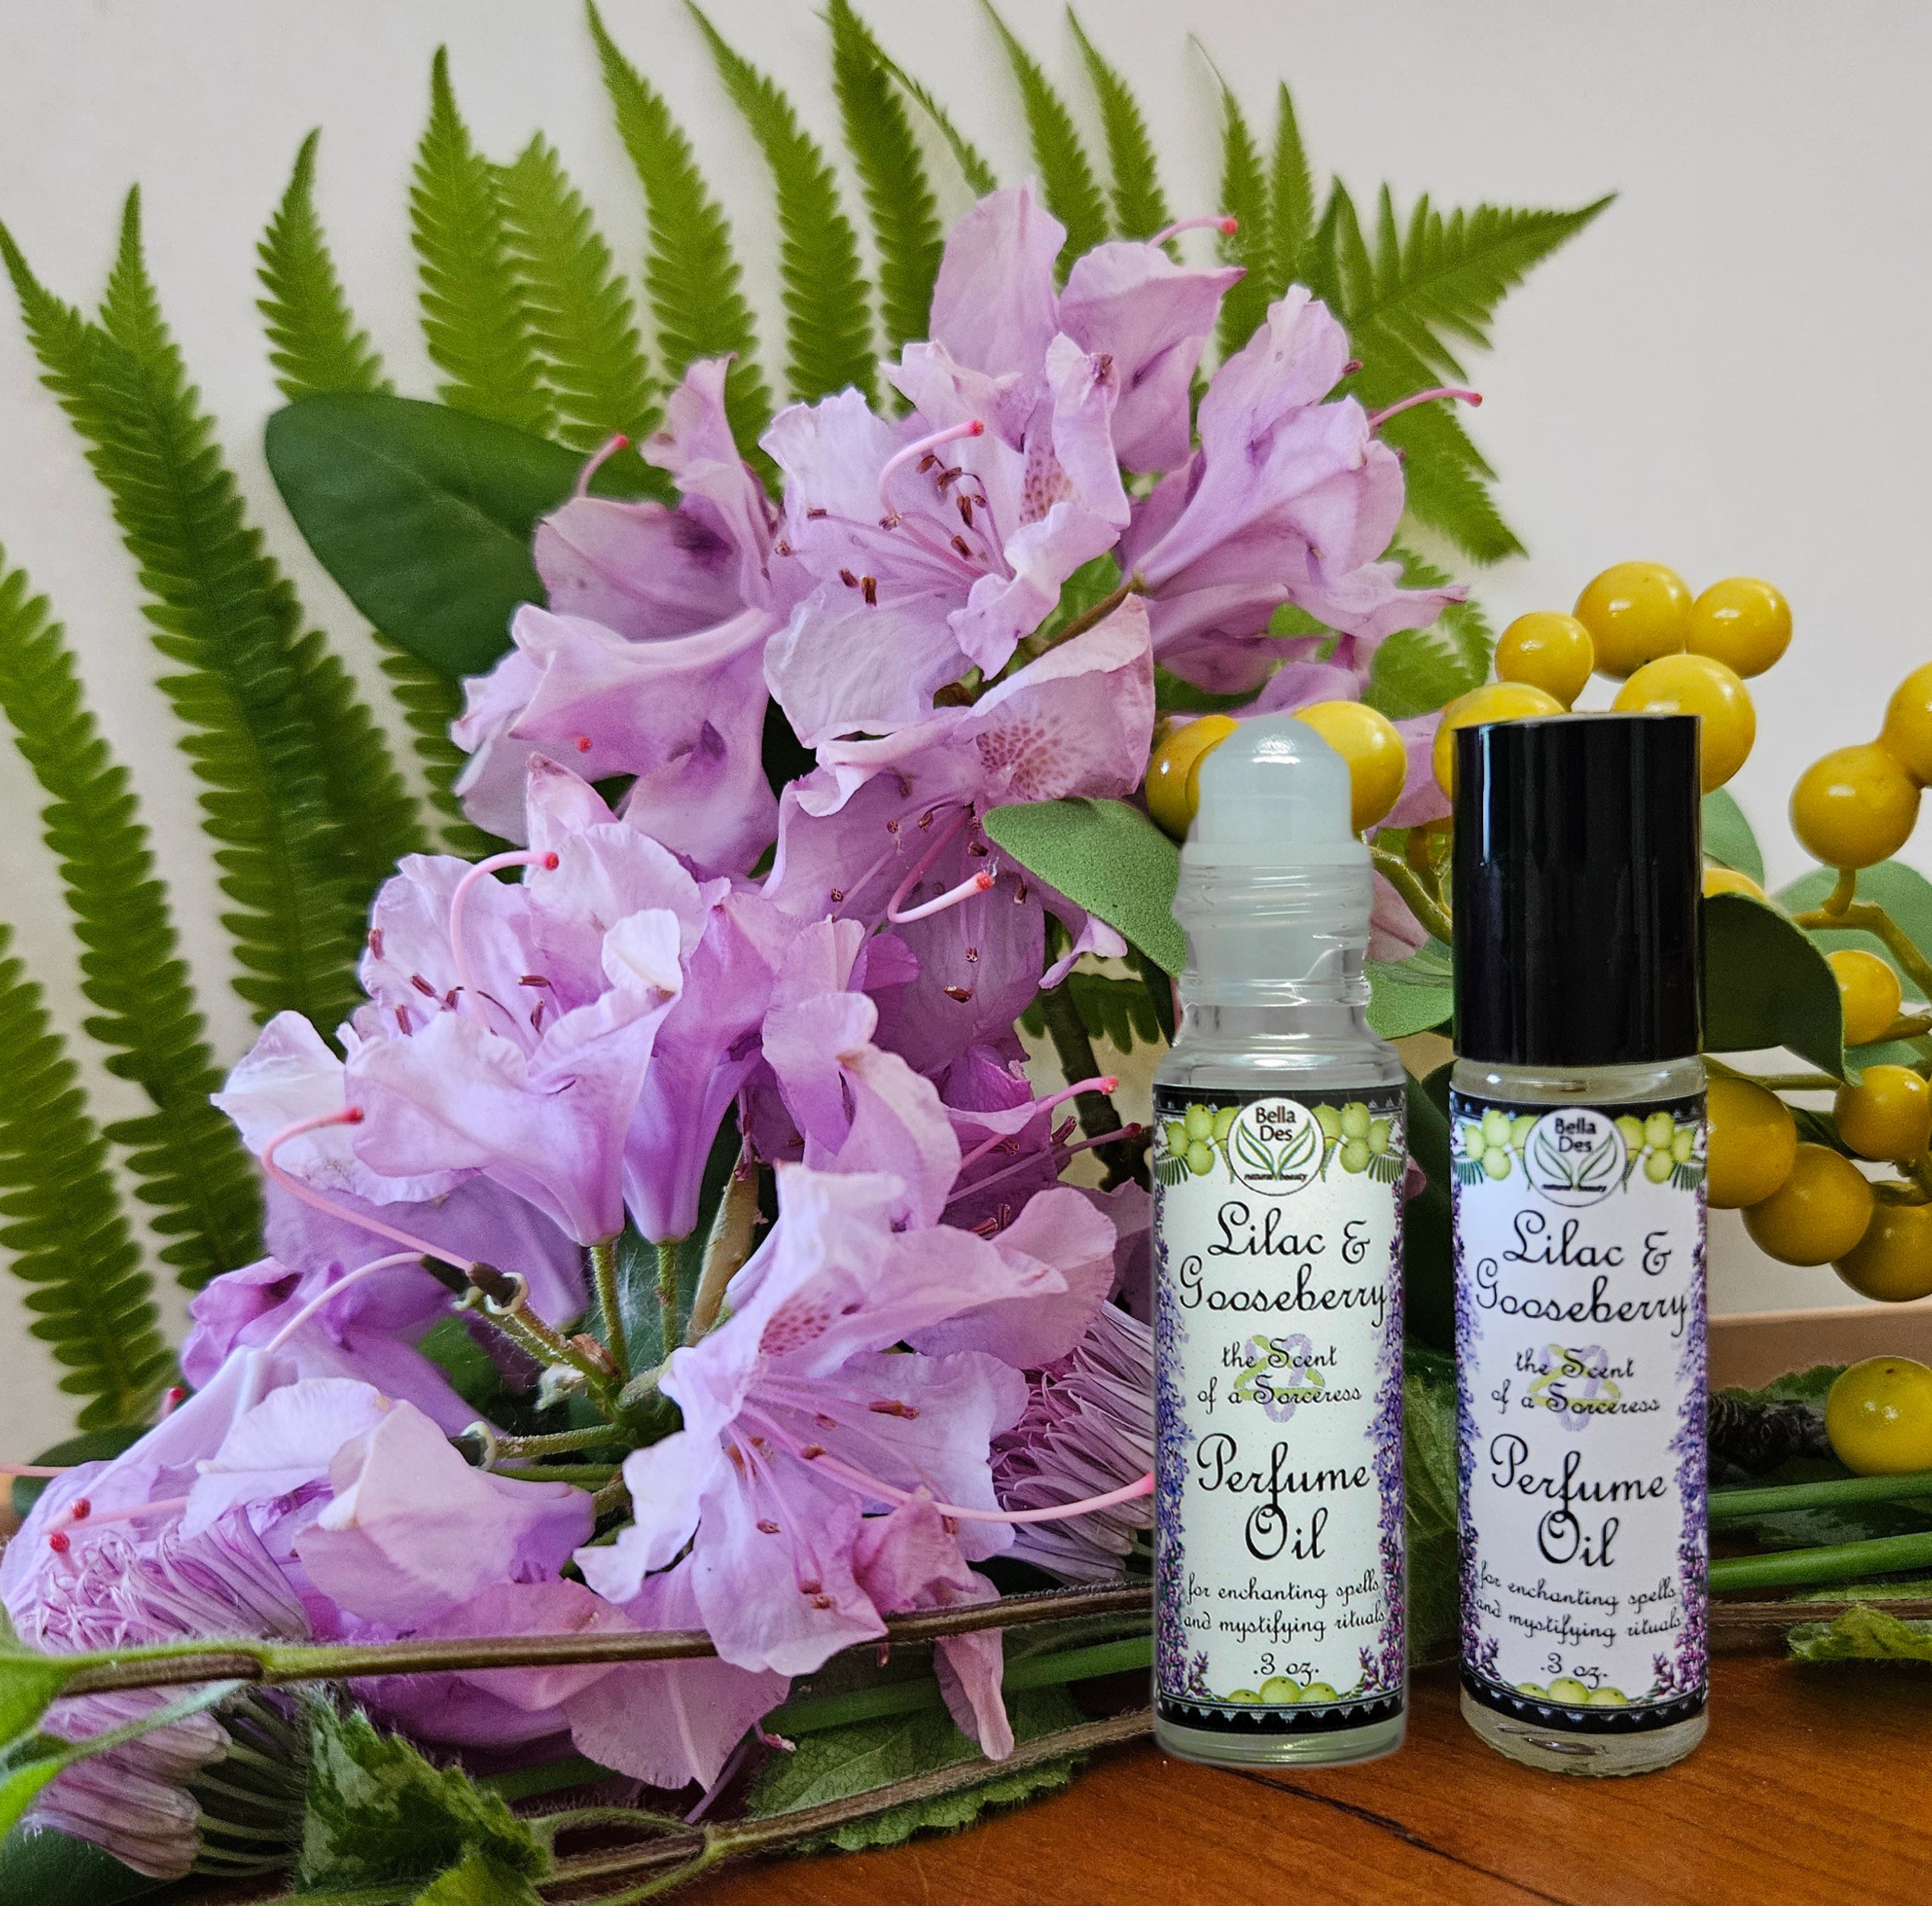 Lilac Fragrance Oil - Premium Grade Scented Oil - 100ml